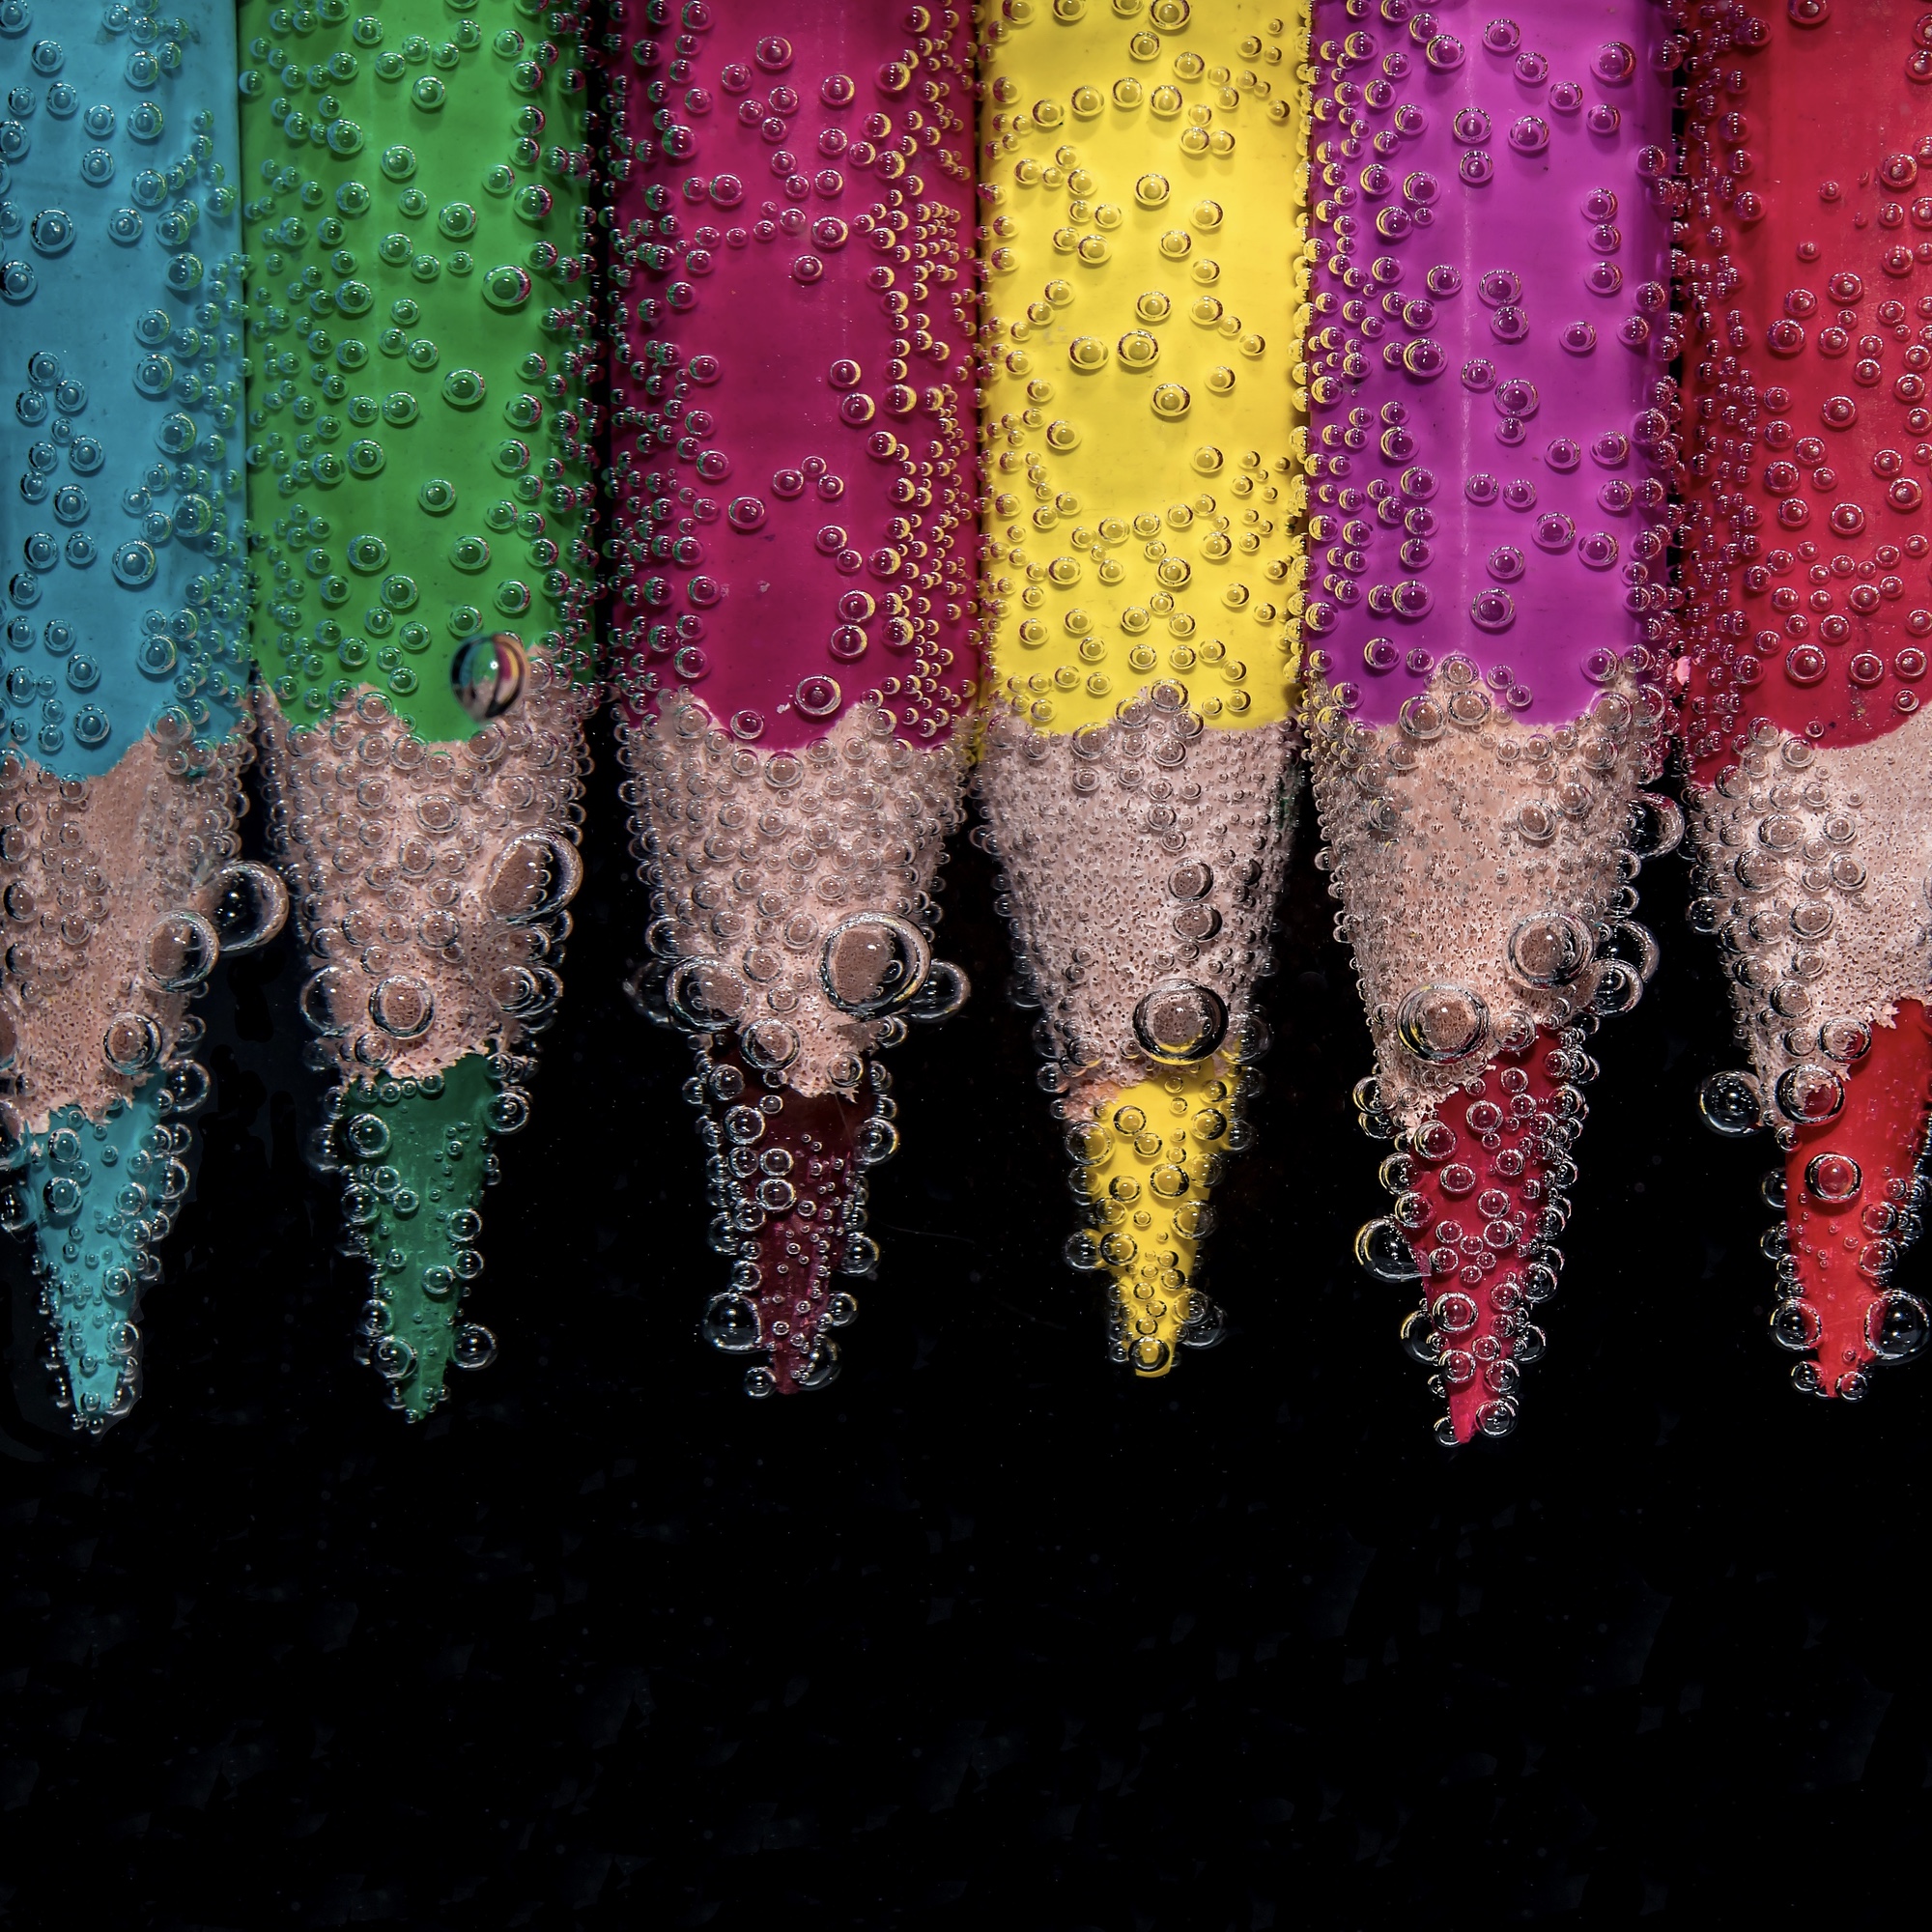 Foto: Reihe von Buntstiften, die unter Wasser liegen und von Luftbläschen umgeben sind